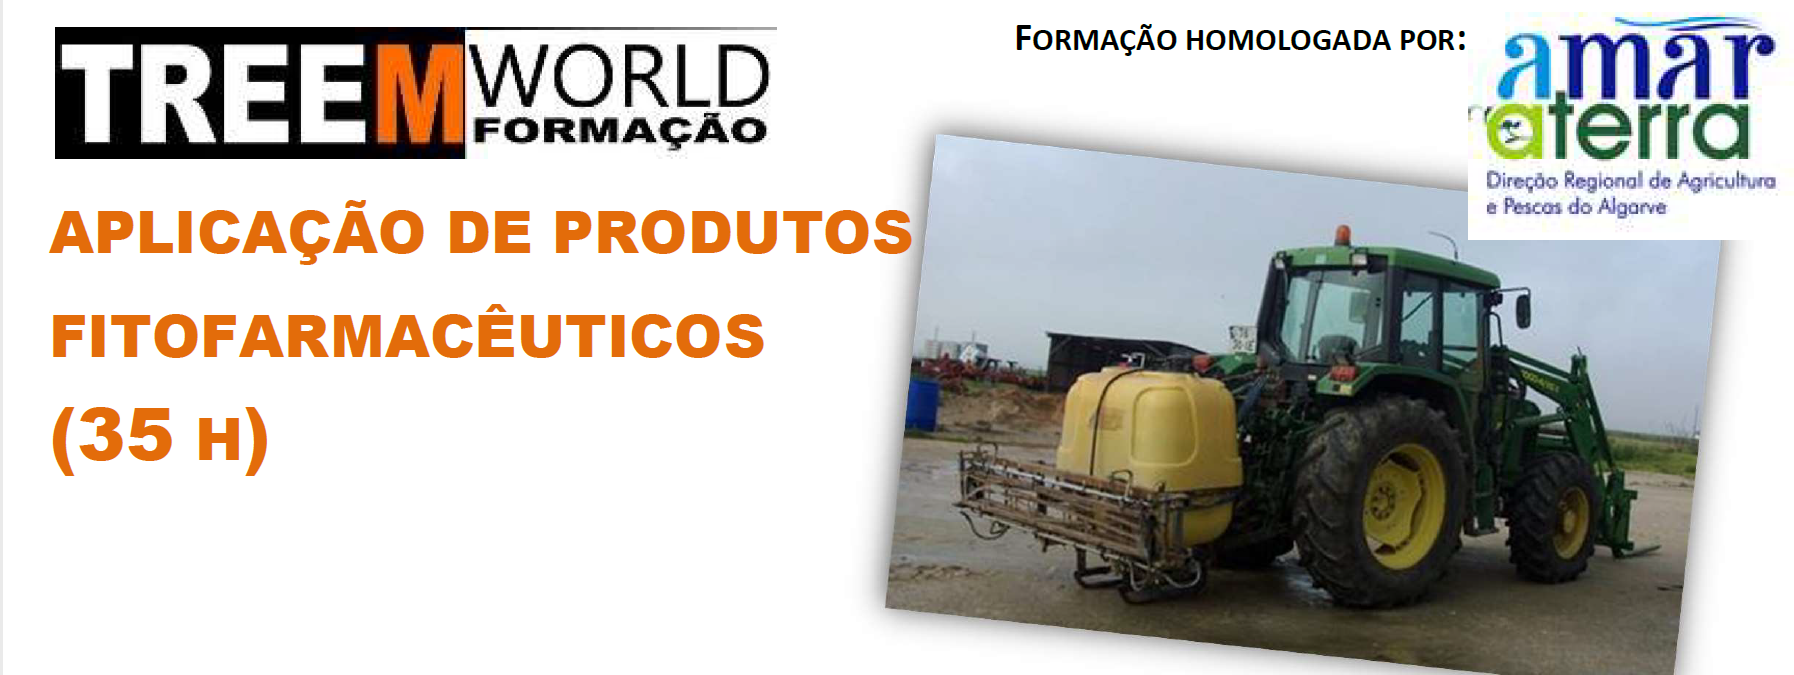 Formação "Aplicação de Produtos Fitofarmacêuticos" - Algarve